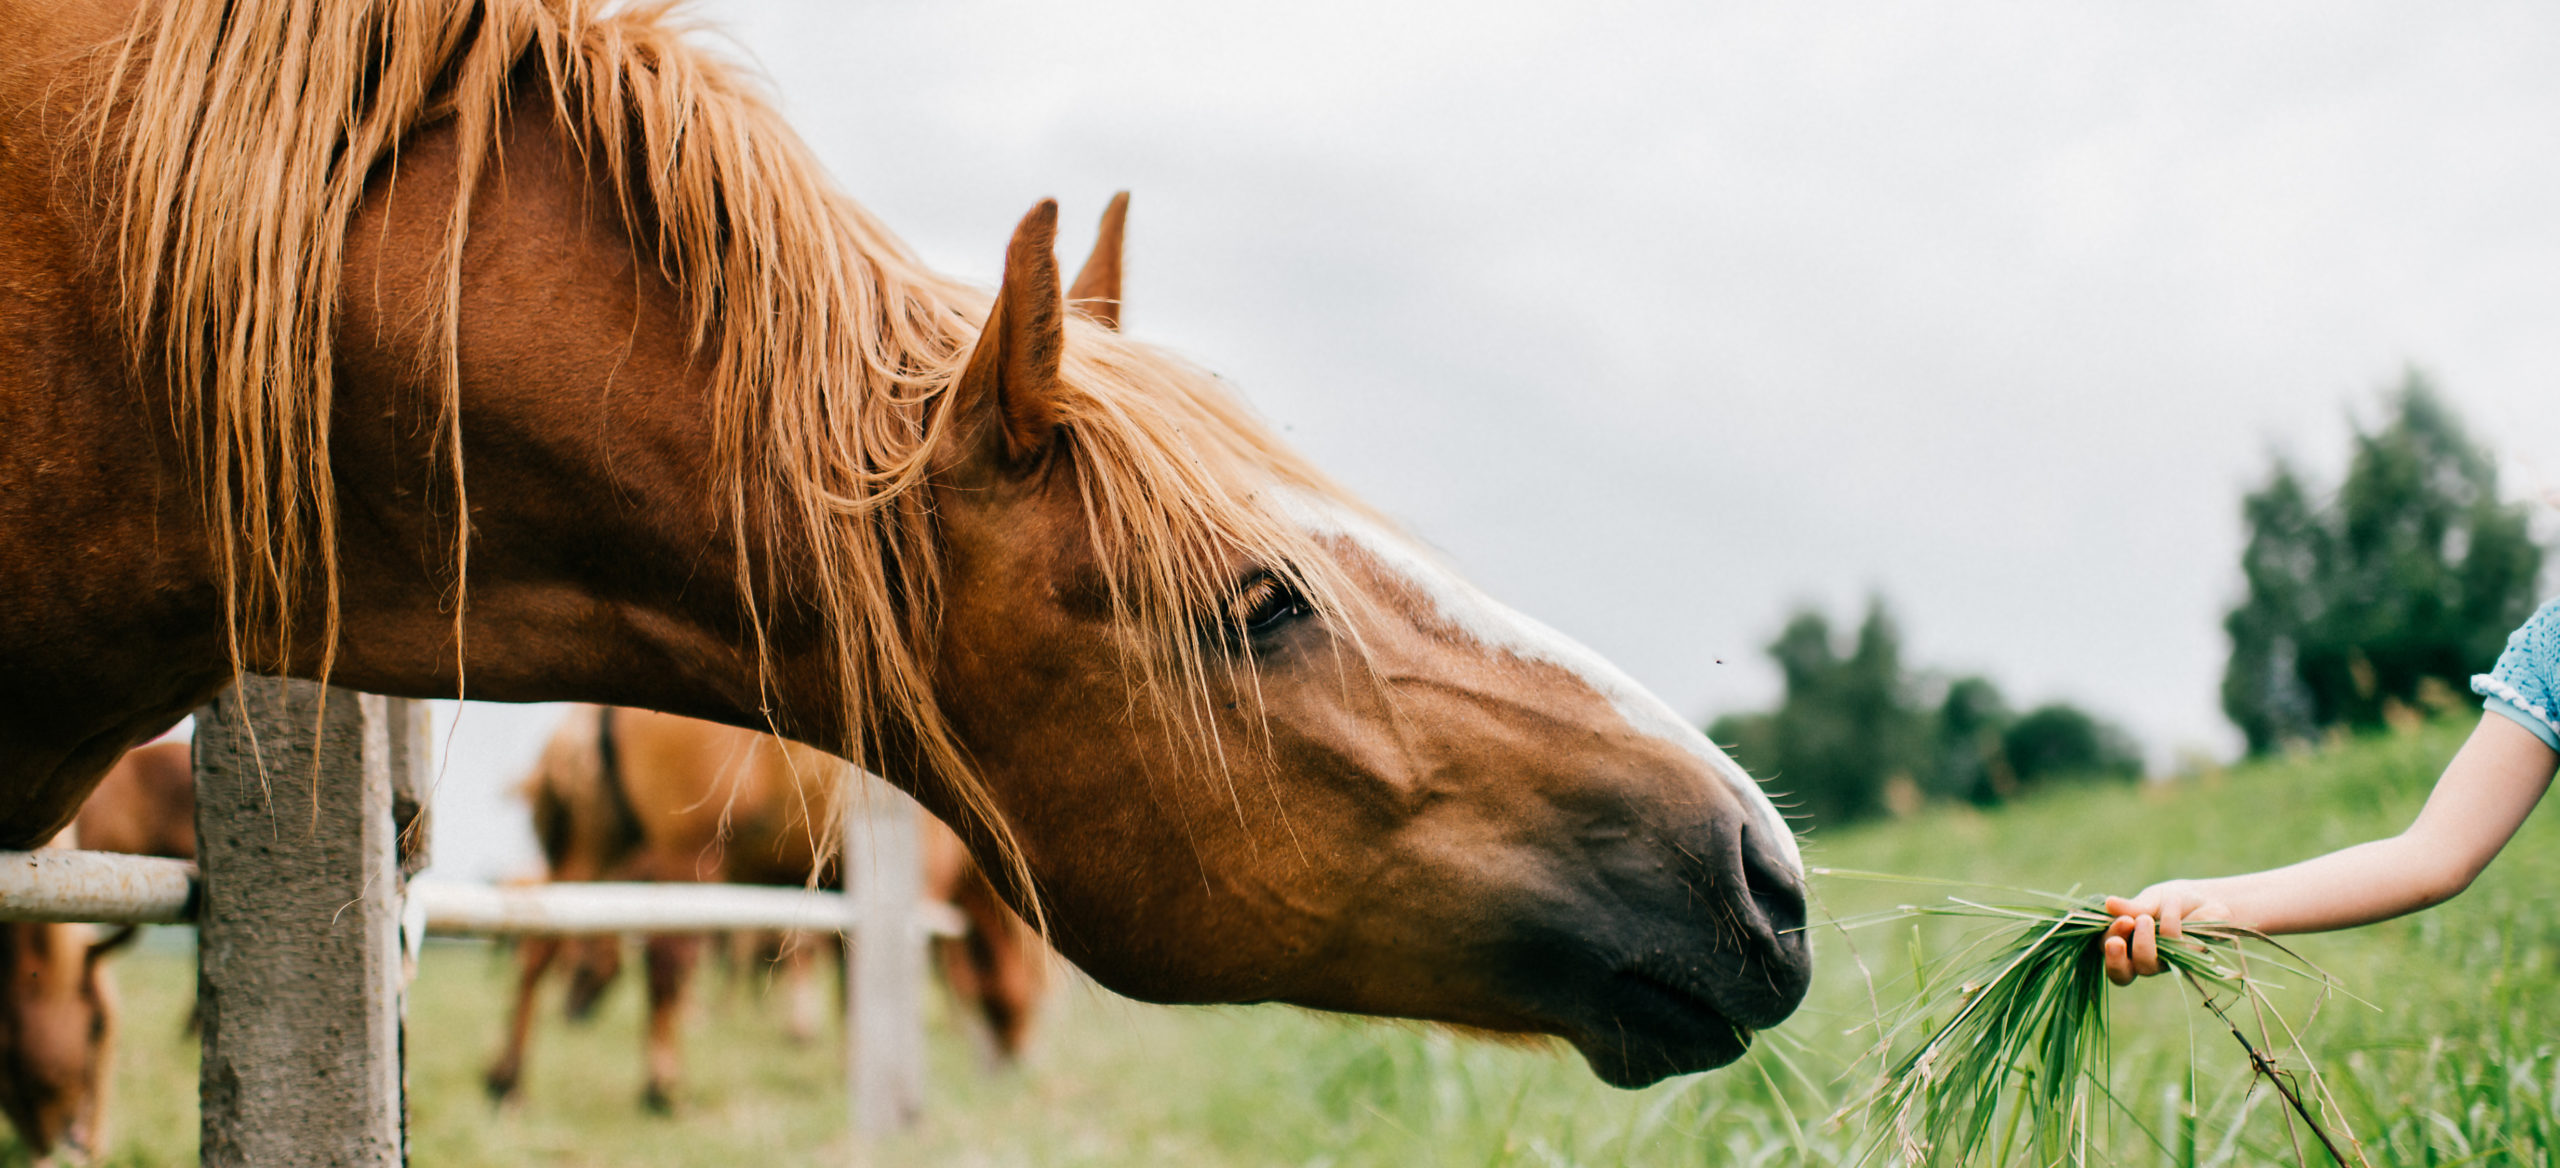 Braunes Pferd frisst Gras aus der Hand hinter dem Zaun Kopf ausgestreckt